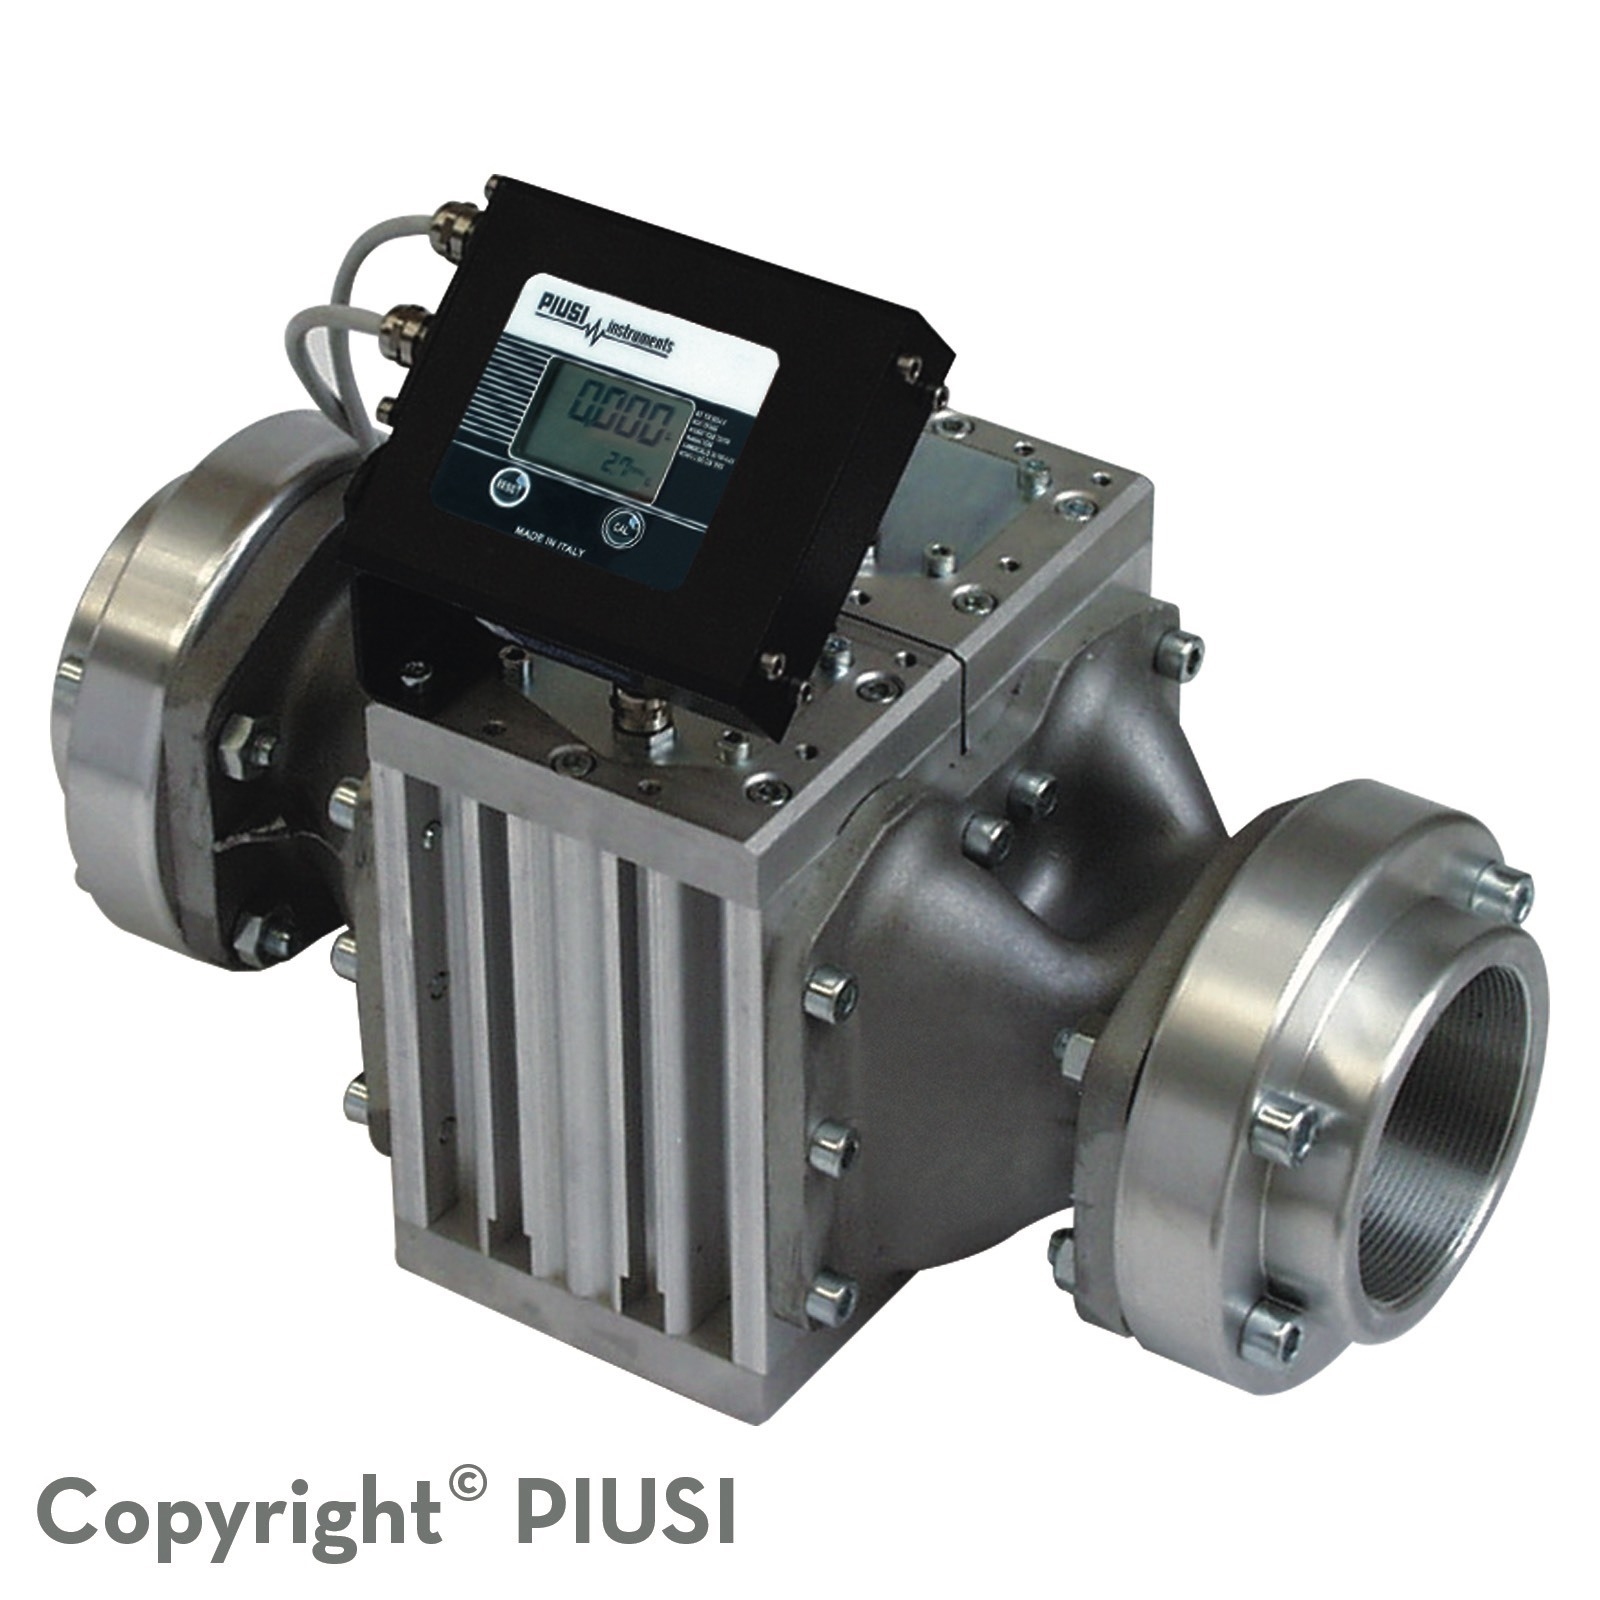 Đồng hồ đo lưu lượng dầu Piusi K900